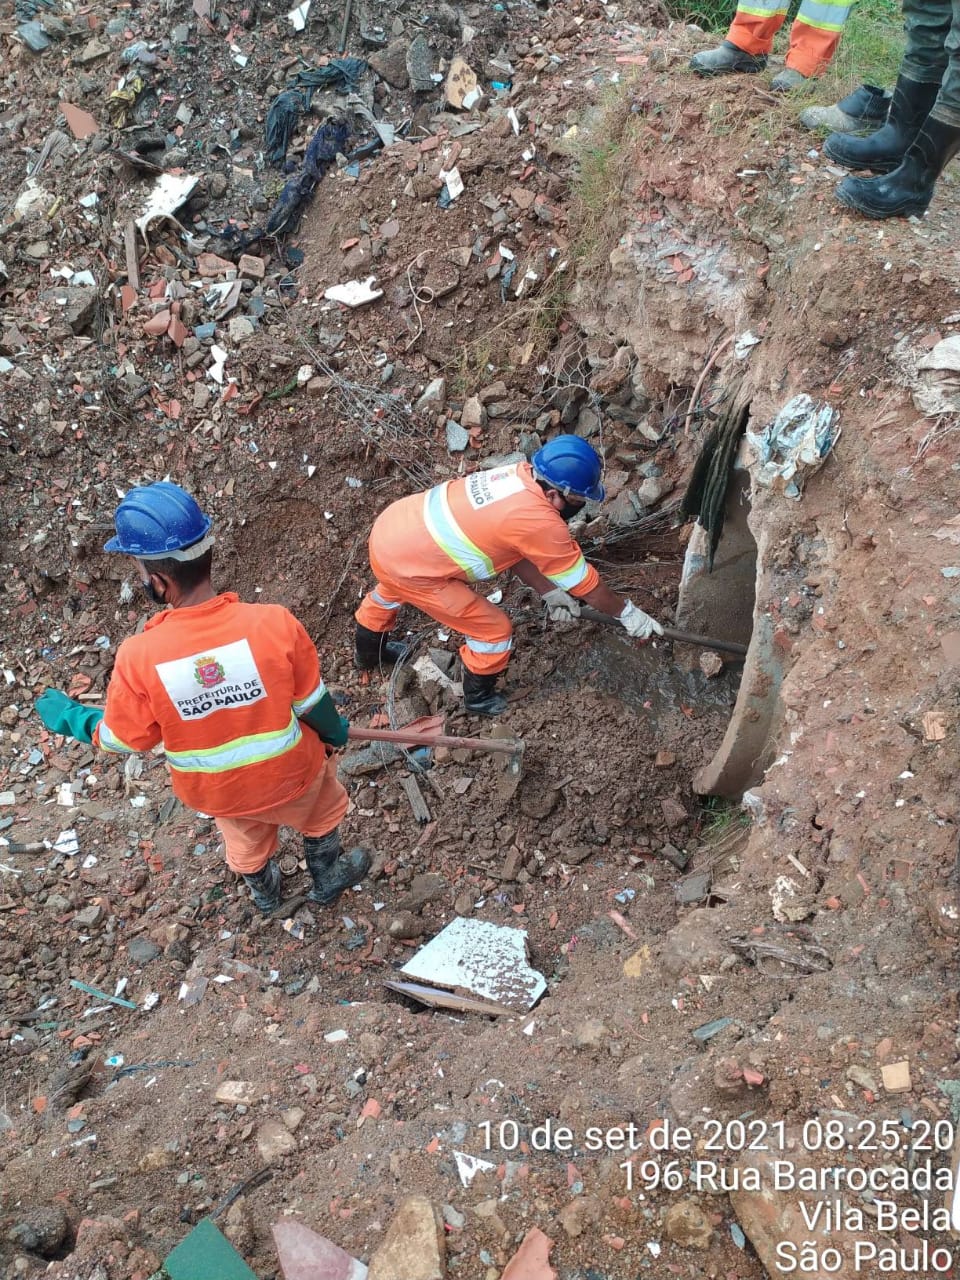 Dois homens, com uniforme laranja e capacetes azuis fazem a limpeza de um tubo de concreto, com entulho servindo de cobertura.  Rua Barrocada, Vila Bela. 